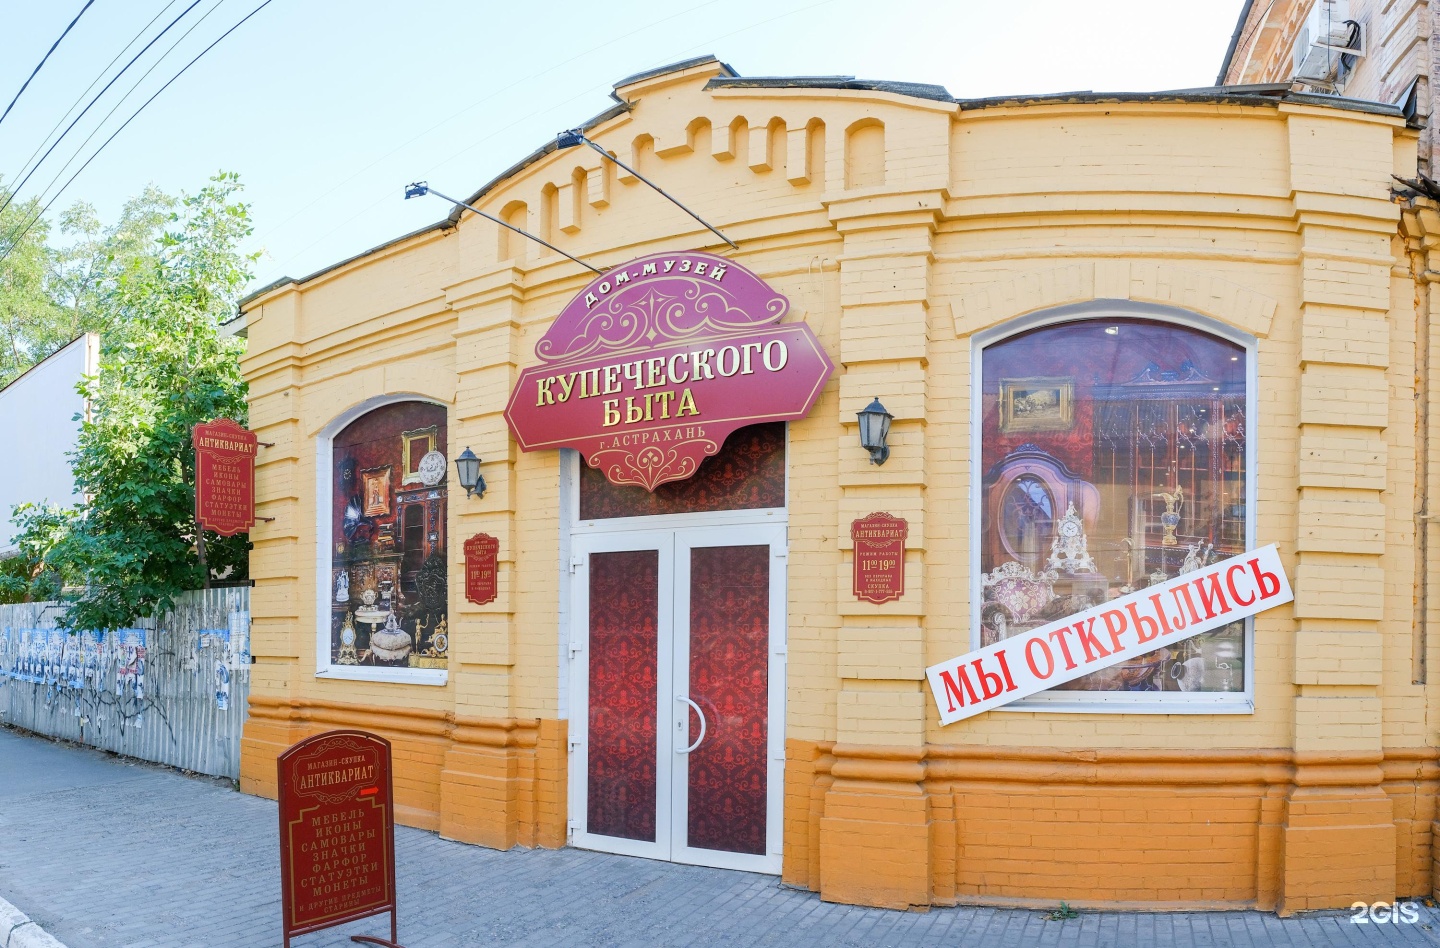 козьмодемьянск музей купеческого быта